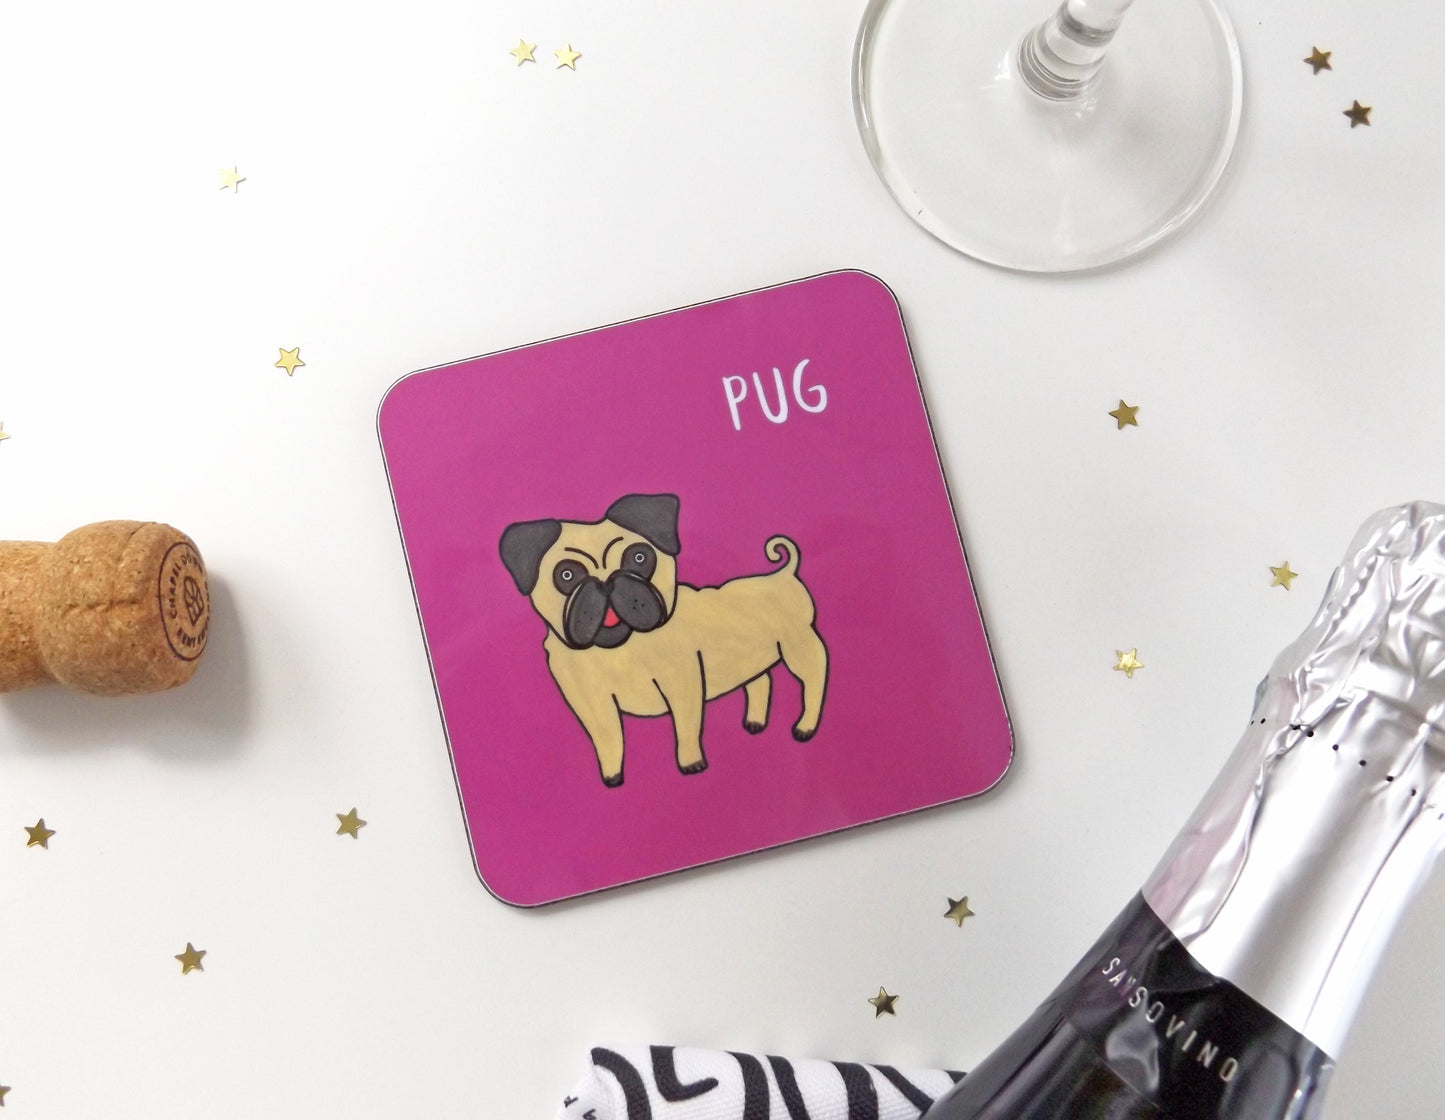 Illustrated Pug drinks coaster